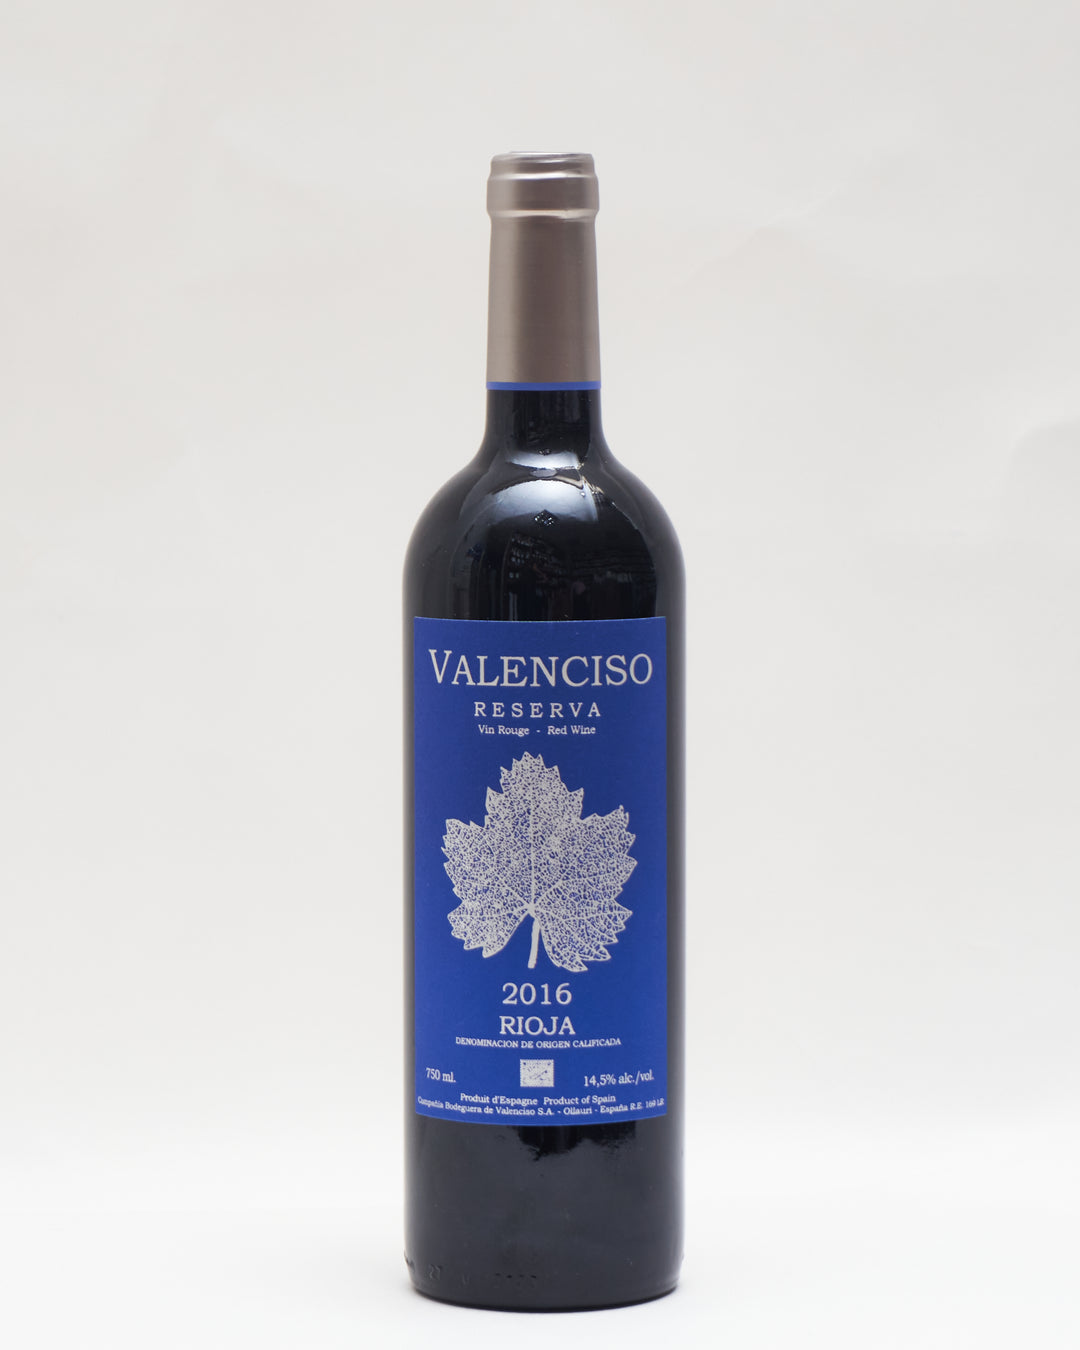 Valenciso Rioja Reserva 2016